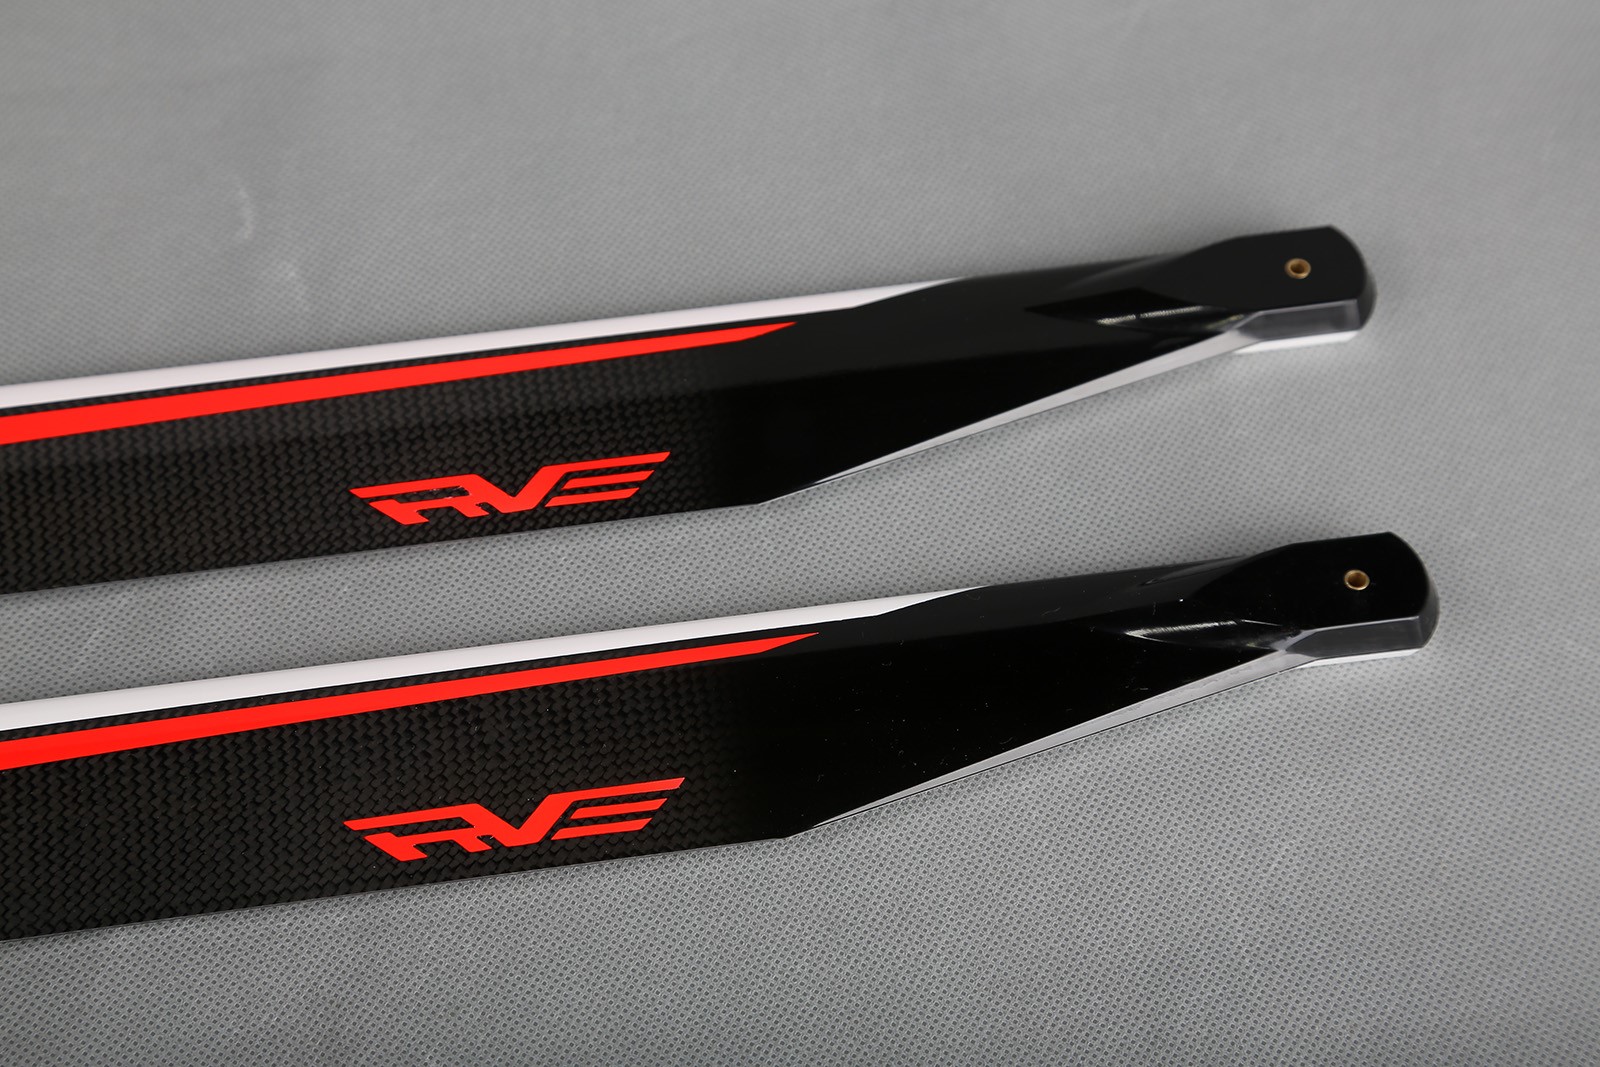 Rve 670 F3C Carbon Fiber Blades(图4)